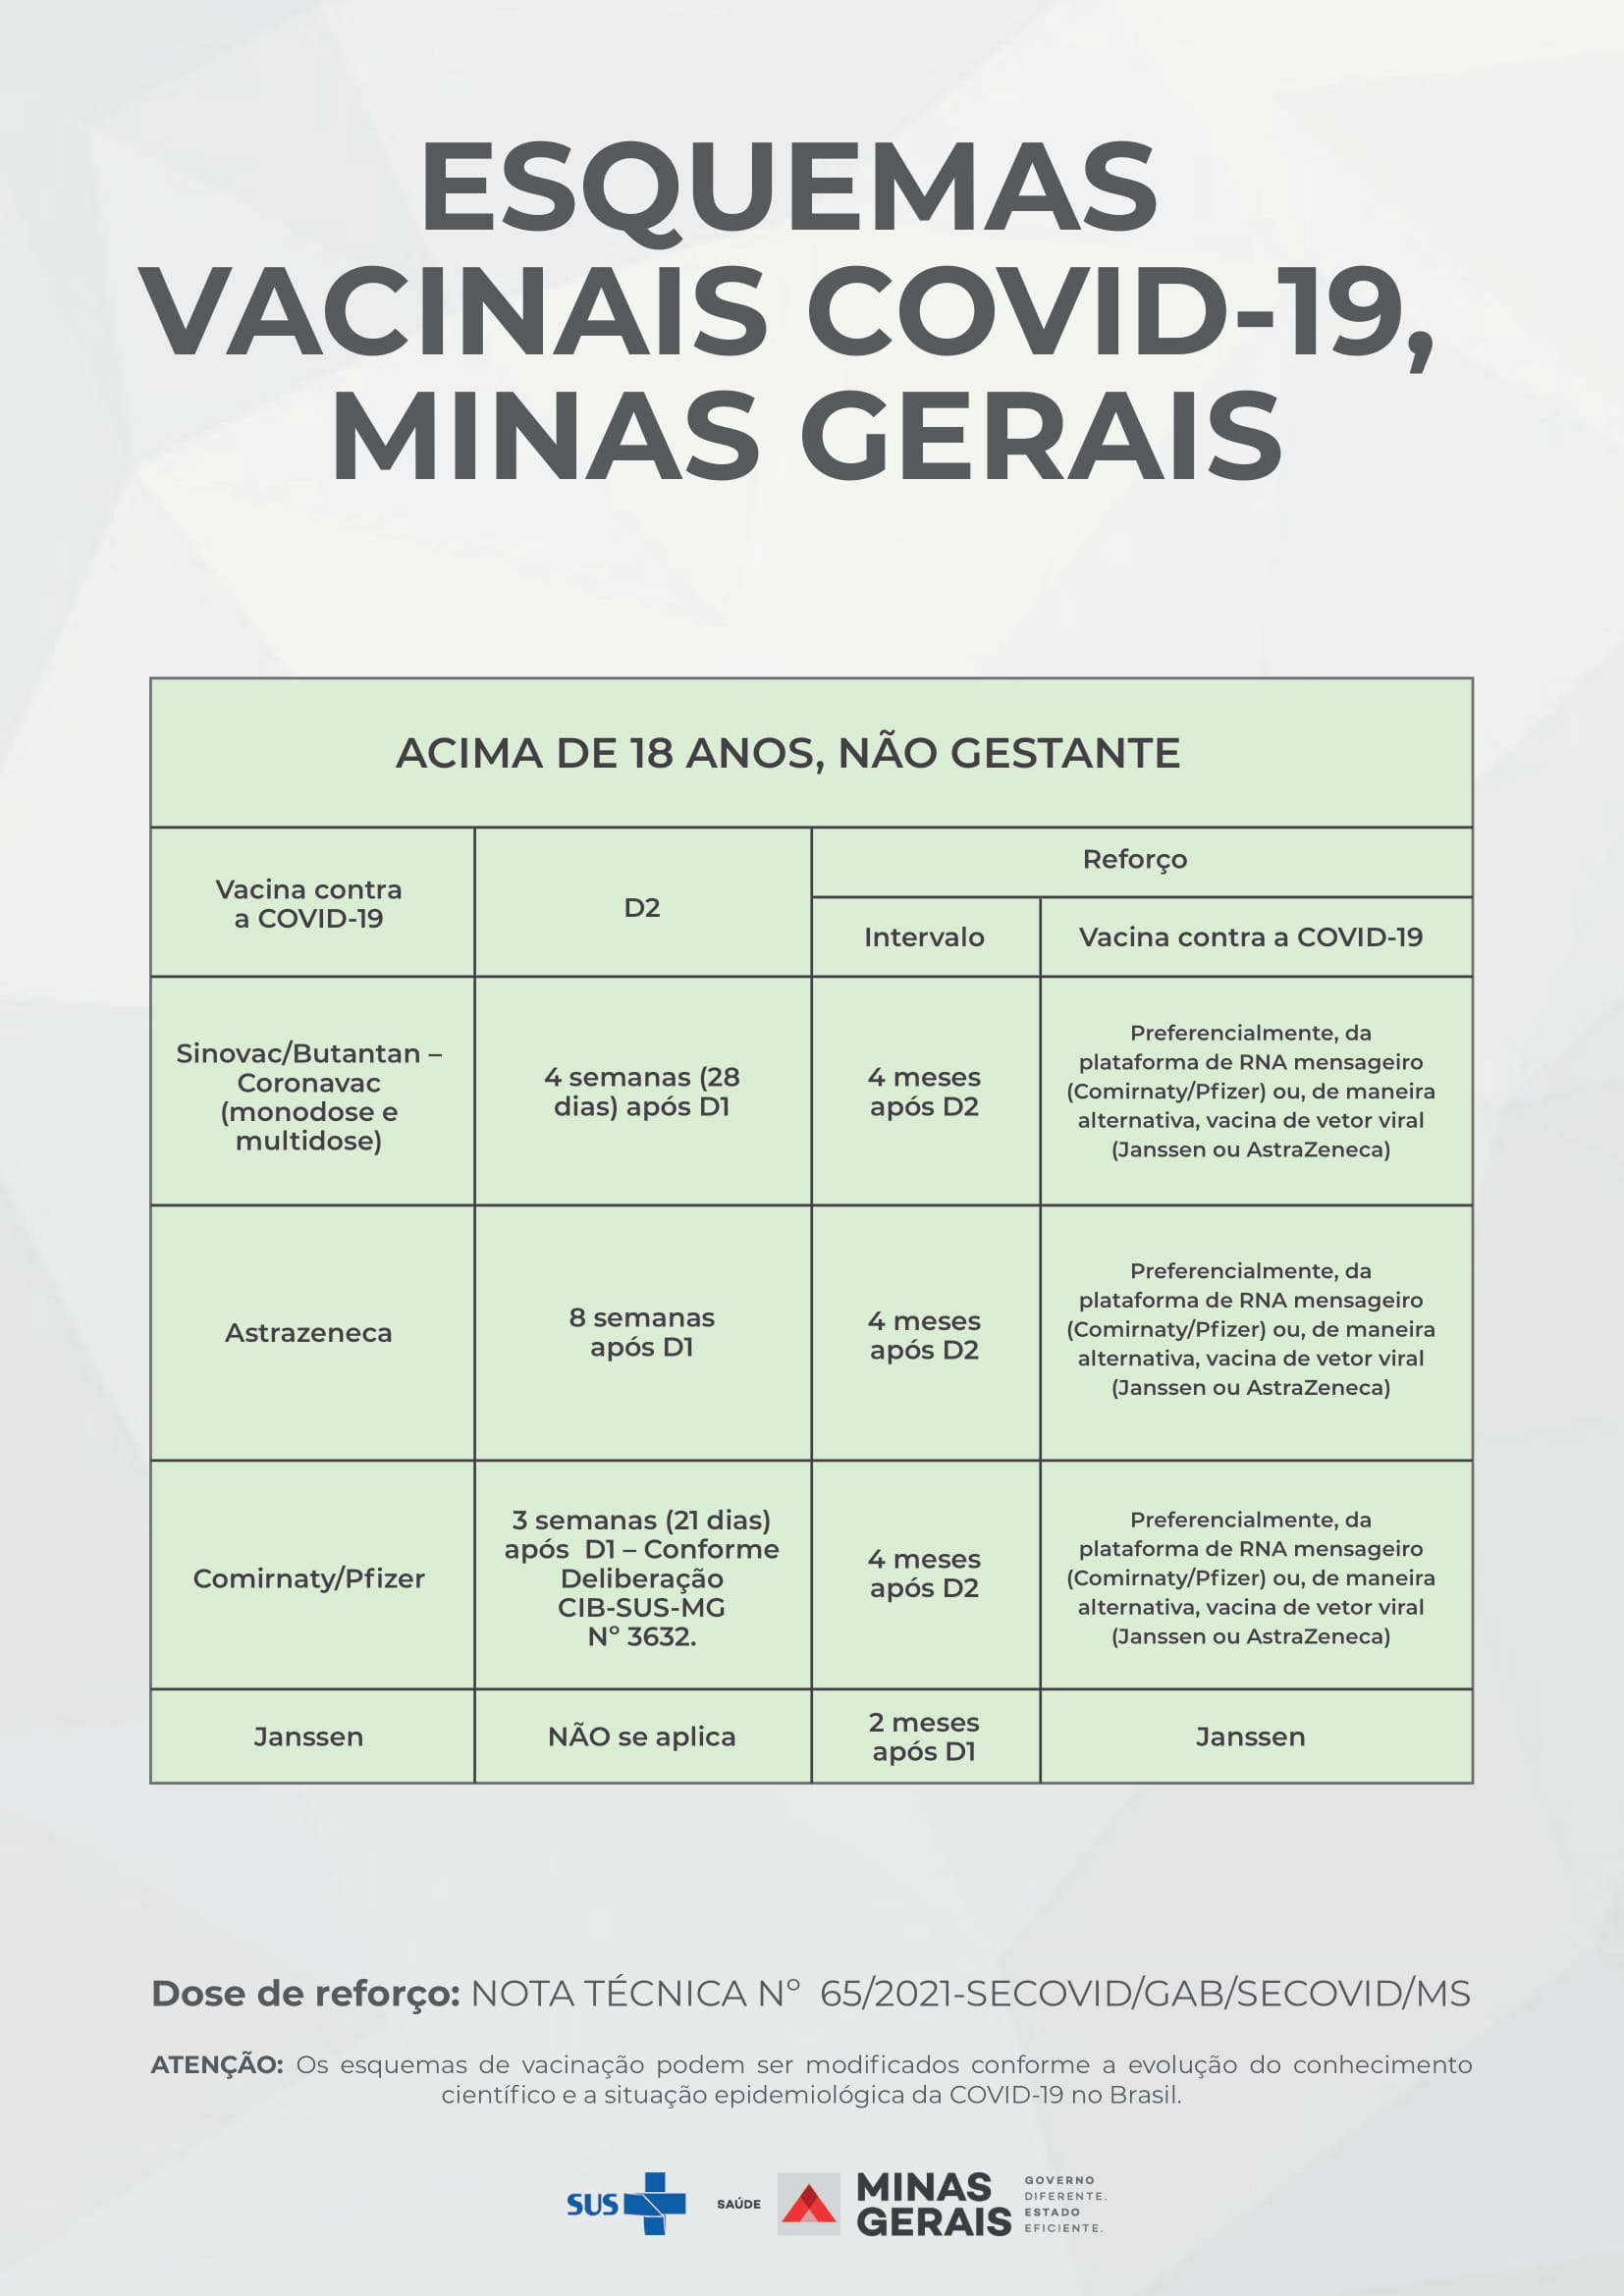 ESQUEMAS VACINAIS COVID-19 MINAS GERAIS 1-1